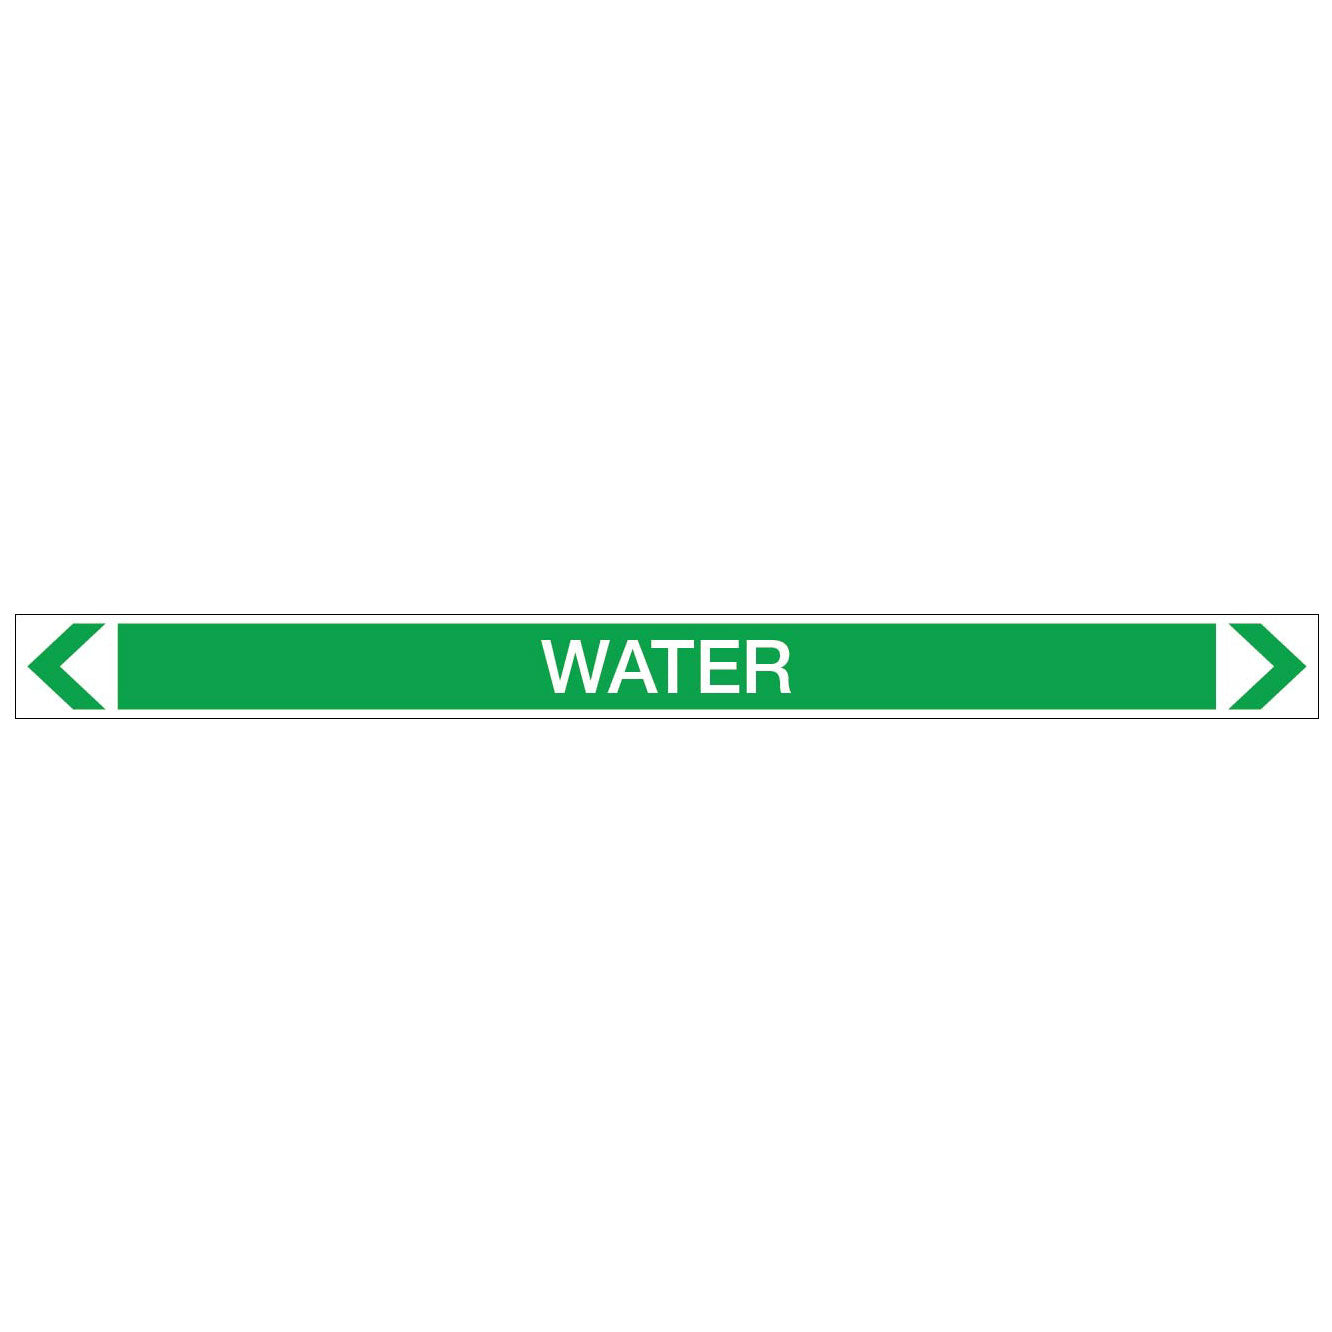 Water - Water - Pipe Marker Sticker